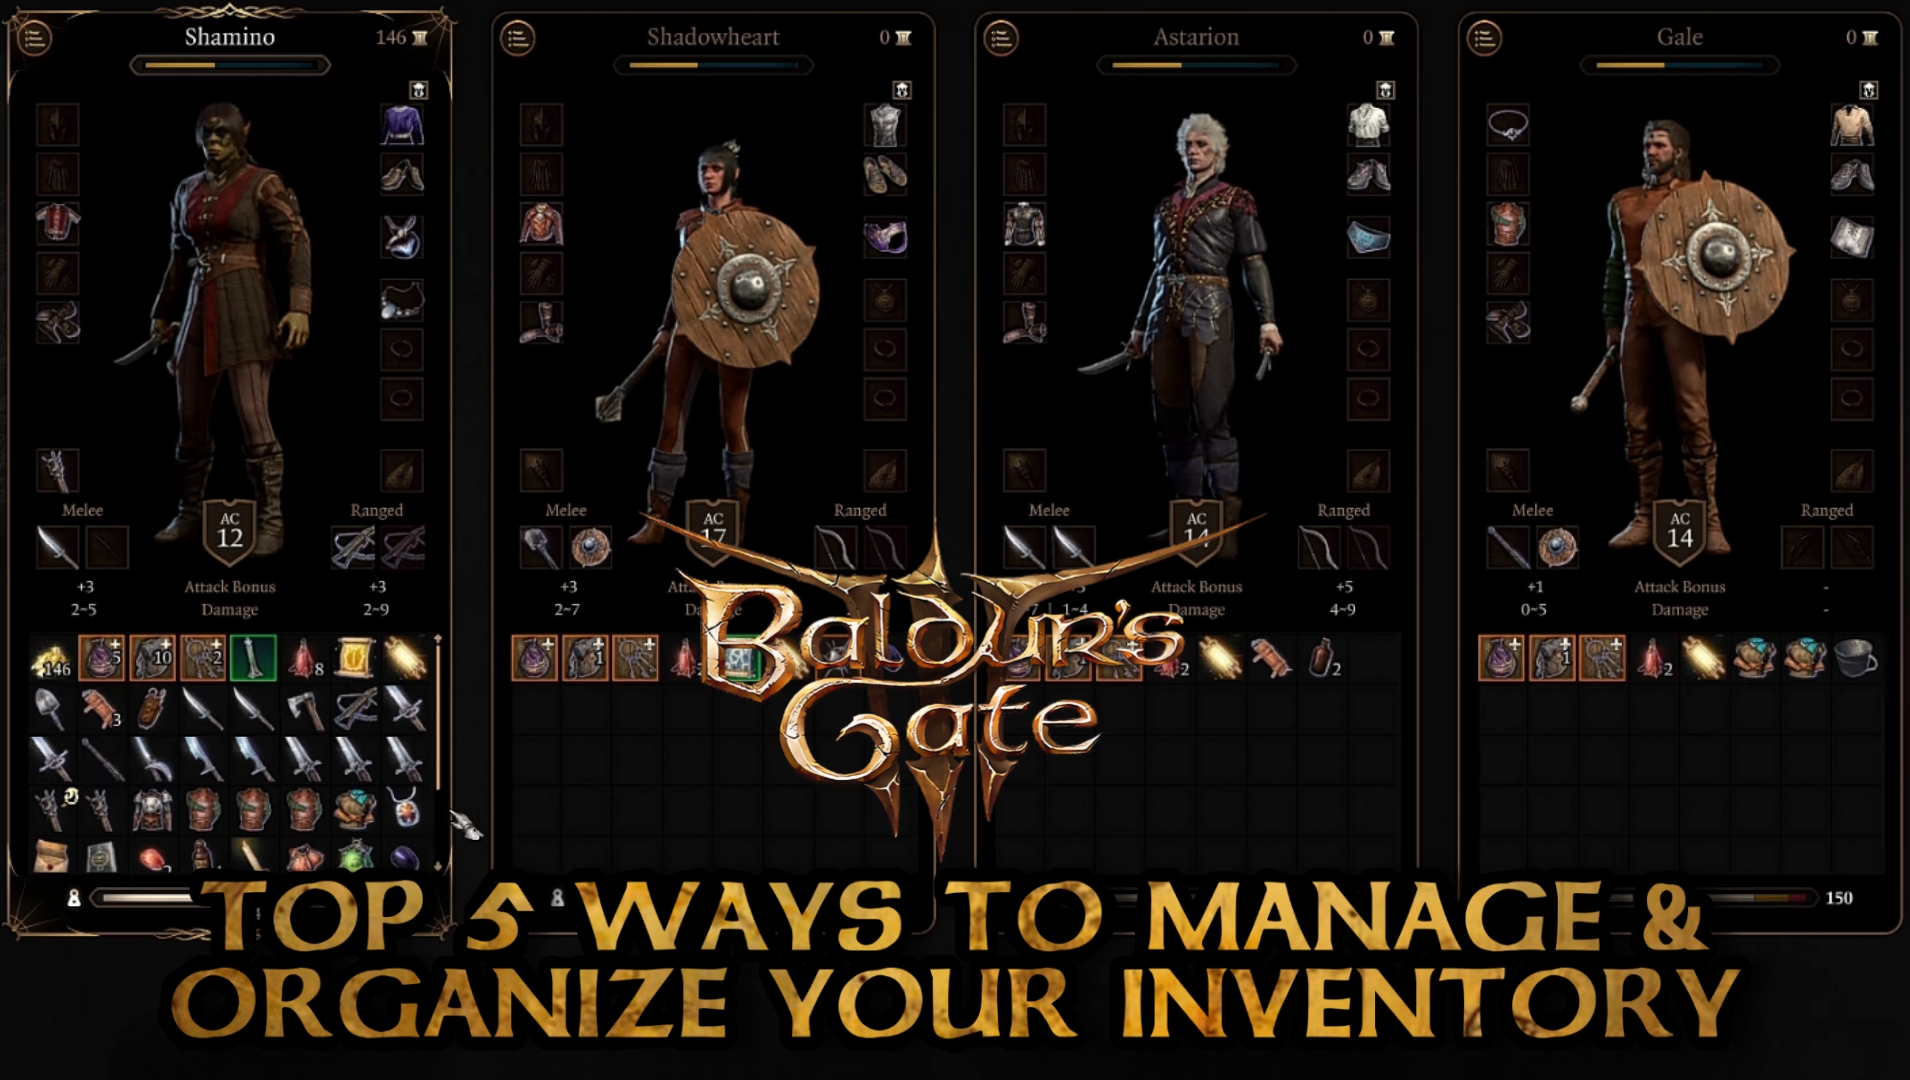 Die 5 besten Möglichkeiten, Ihr Inventar zu verwalten und zu organisieren – Cover von Baldur’s Gate 3